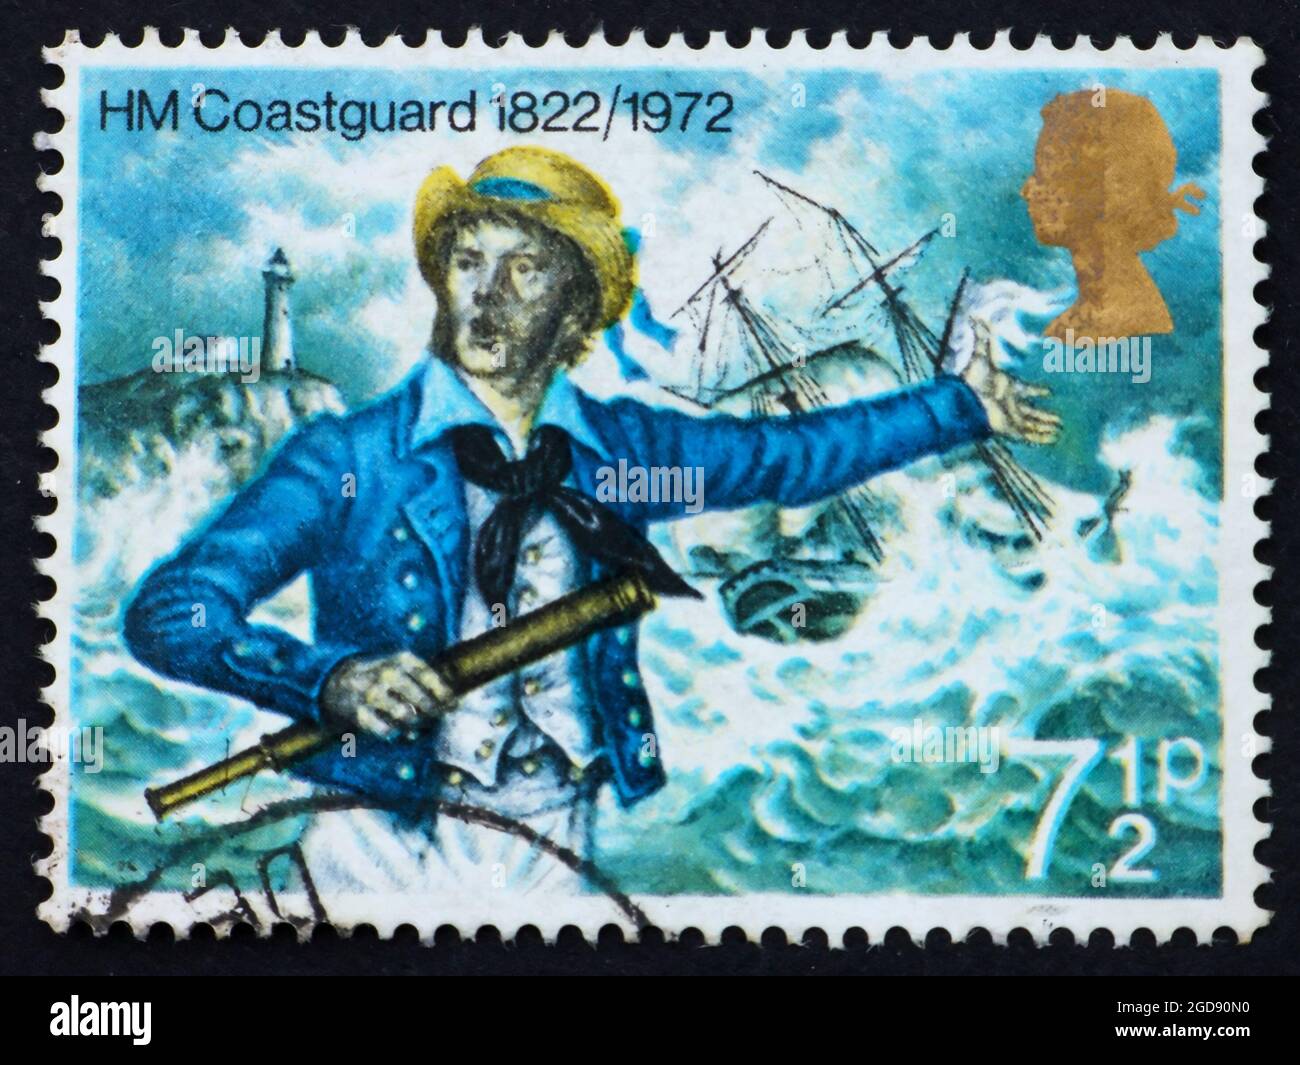 GRANDE-BRETAGNE – VERS 1972 : un timbre imprimé en Grande-Bretagne montre la Garde côtière, sesqucentenaire de la garde côtière britannique, vers 1972 Banque D'Images